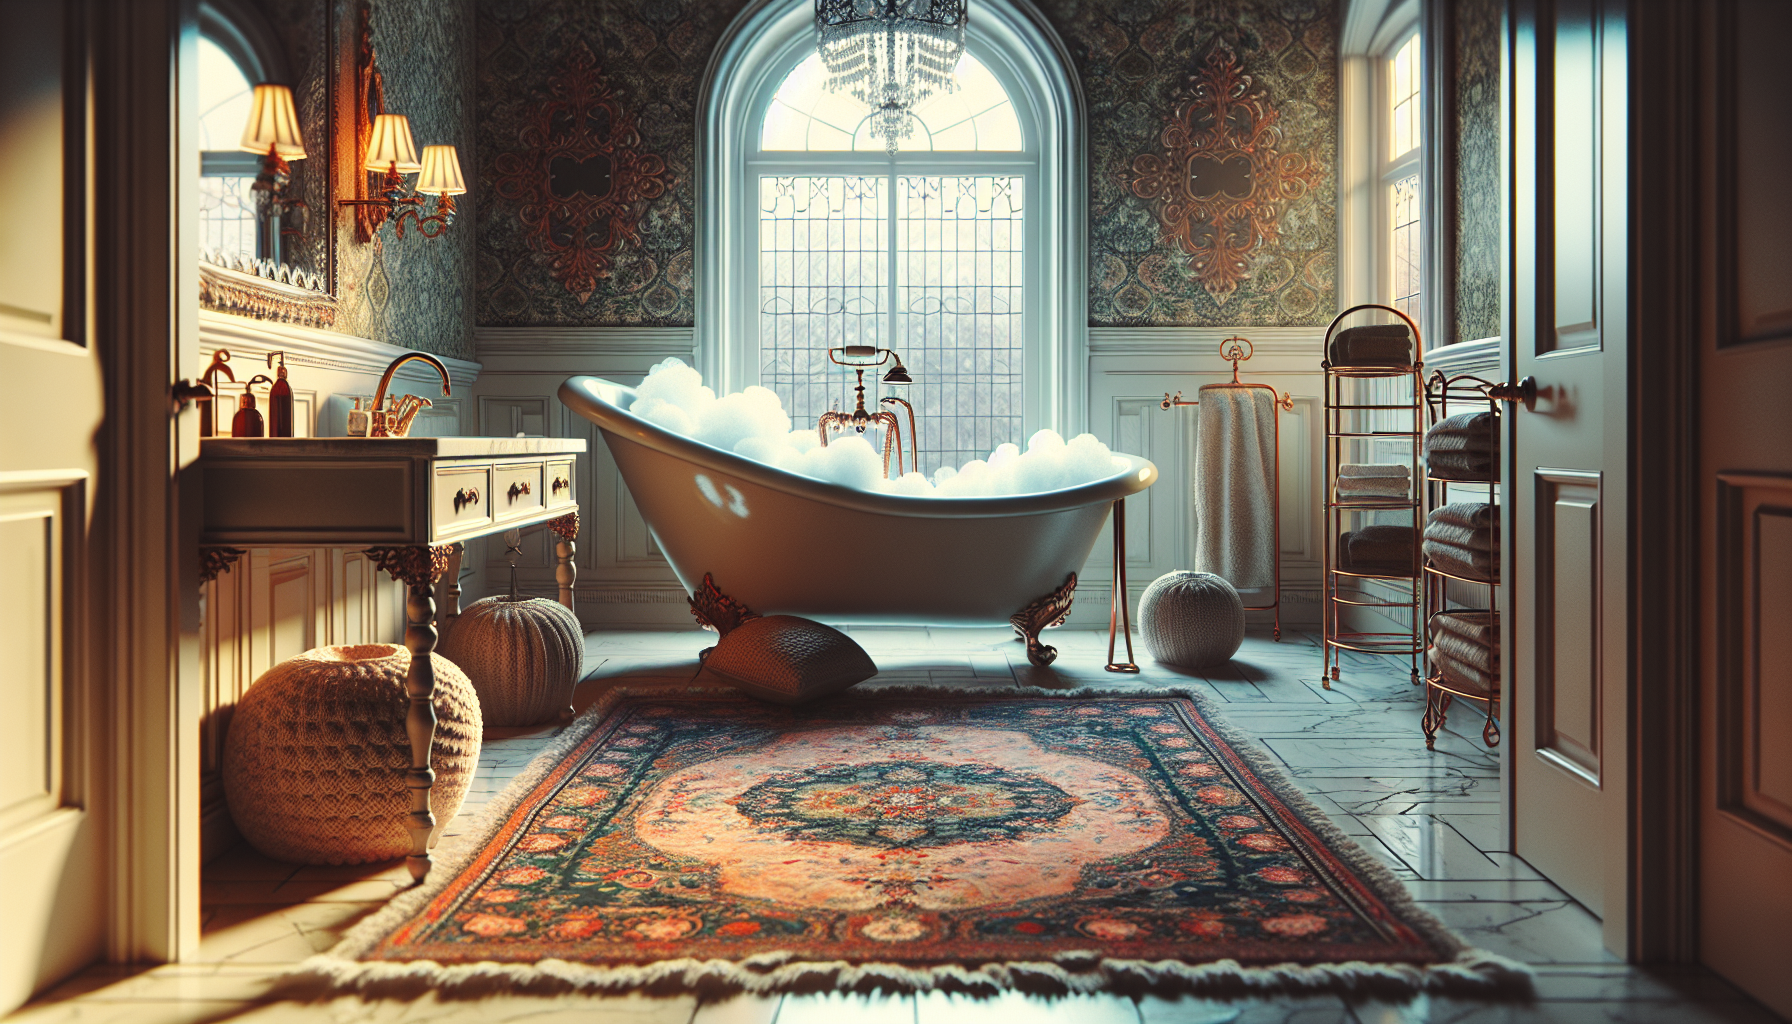 Dekoration und wohnliche Akzente: Illustration von dekorativen Elementen und wohnlichen Akzenten in einem großen Badezimmer